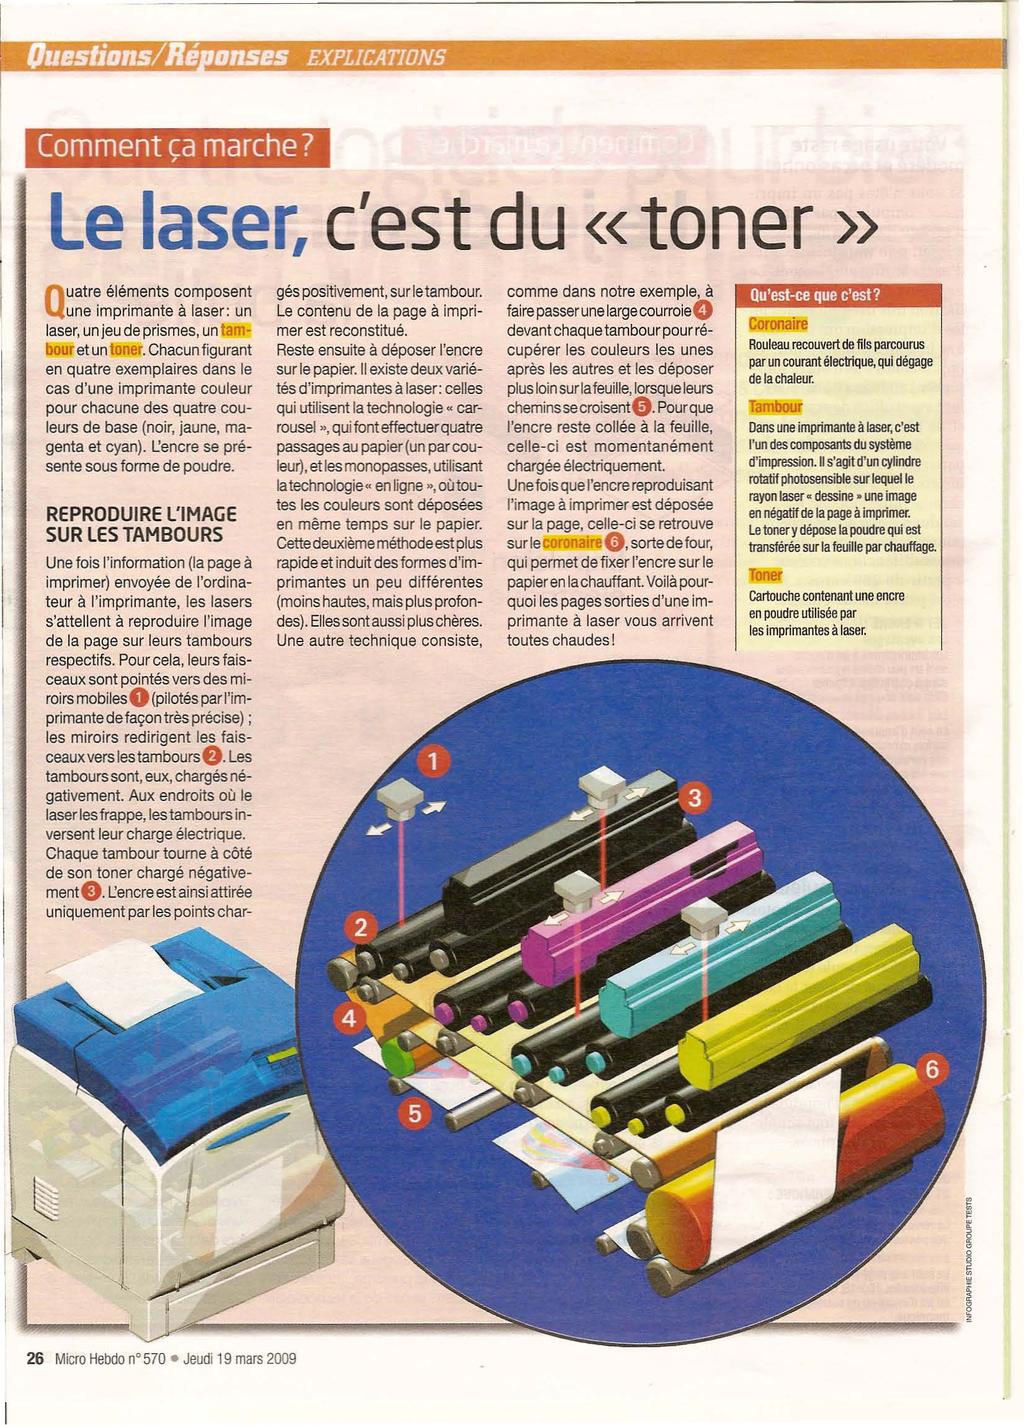 Comment ca marche?, Le laser, c'est du «toner» uatre éléments composent Qune imprimante à laser: un laser, unjeudeprismes, untambouretuntoner.